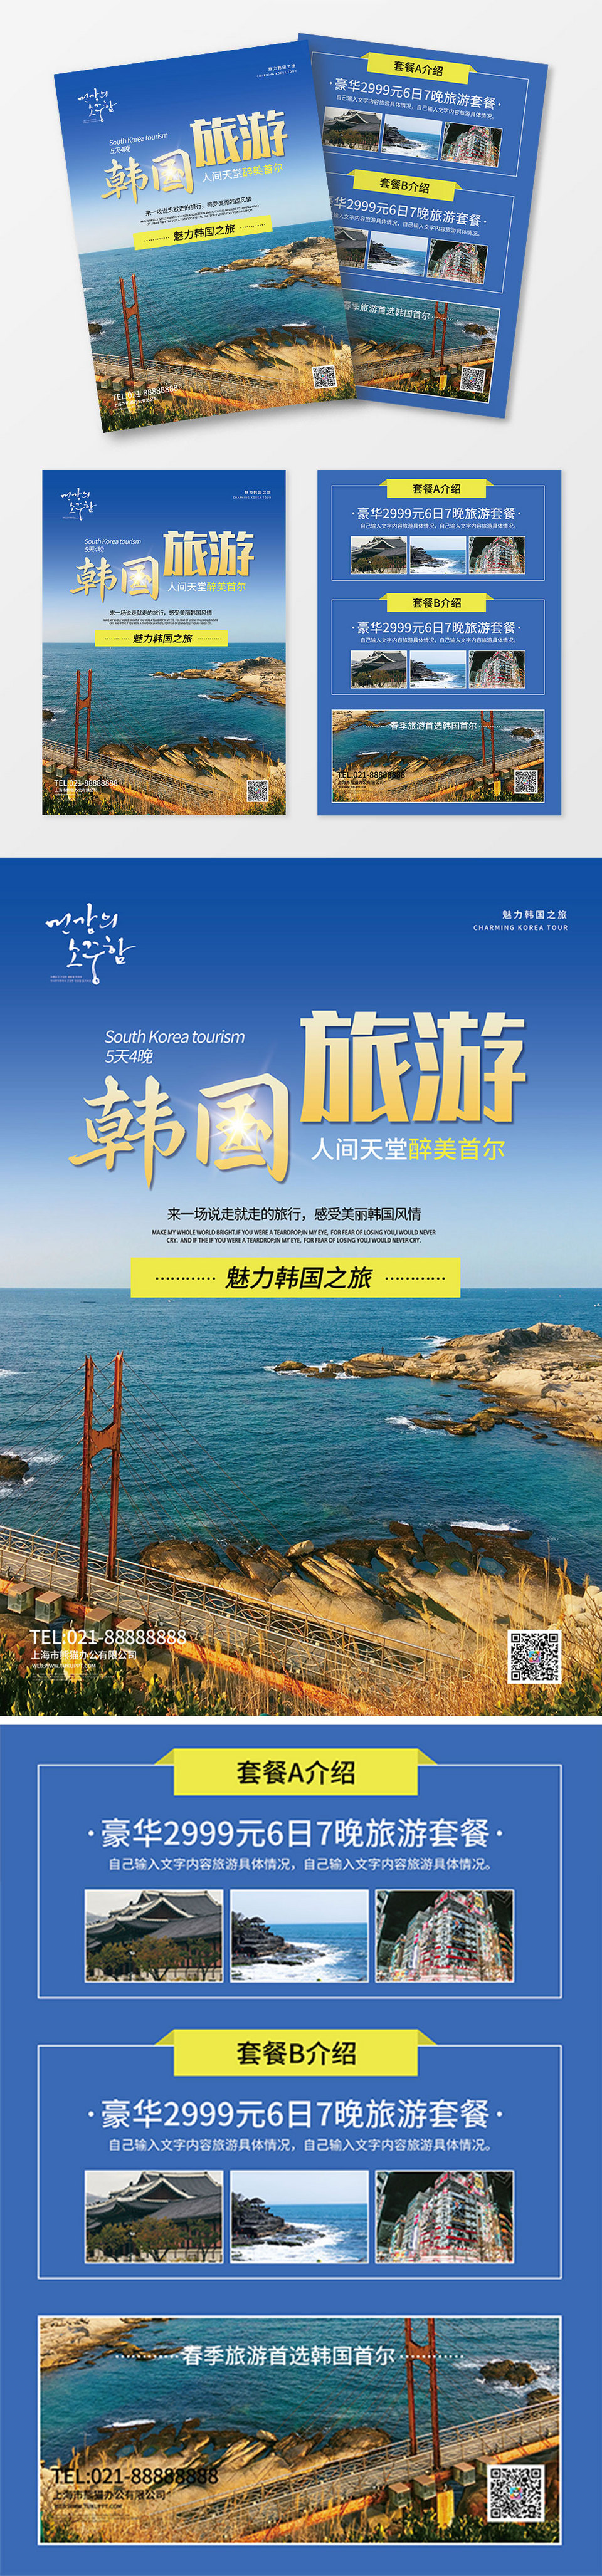 大气韩国出国旅游海边游宣传单页